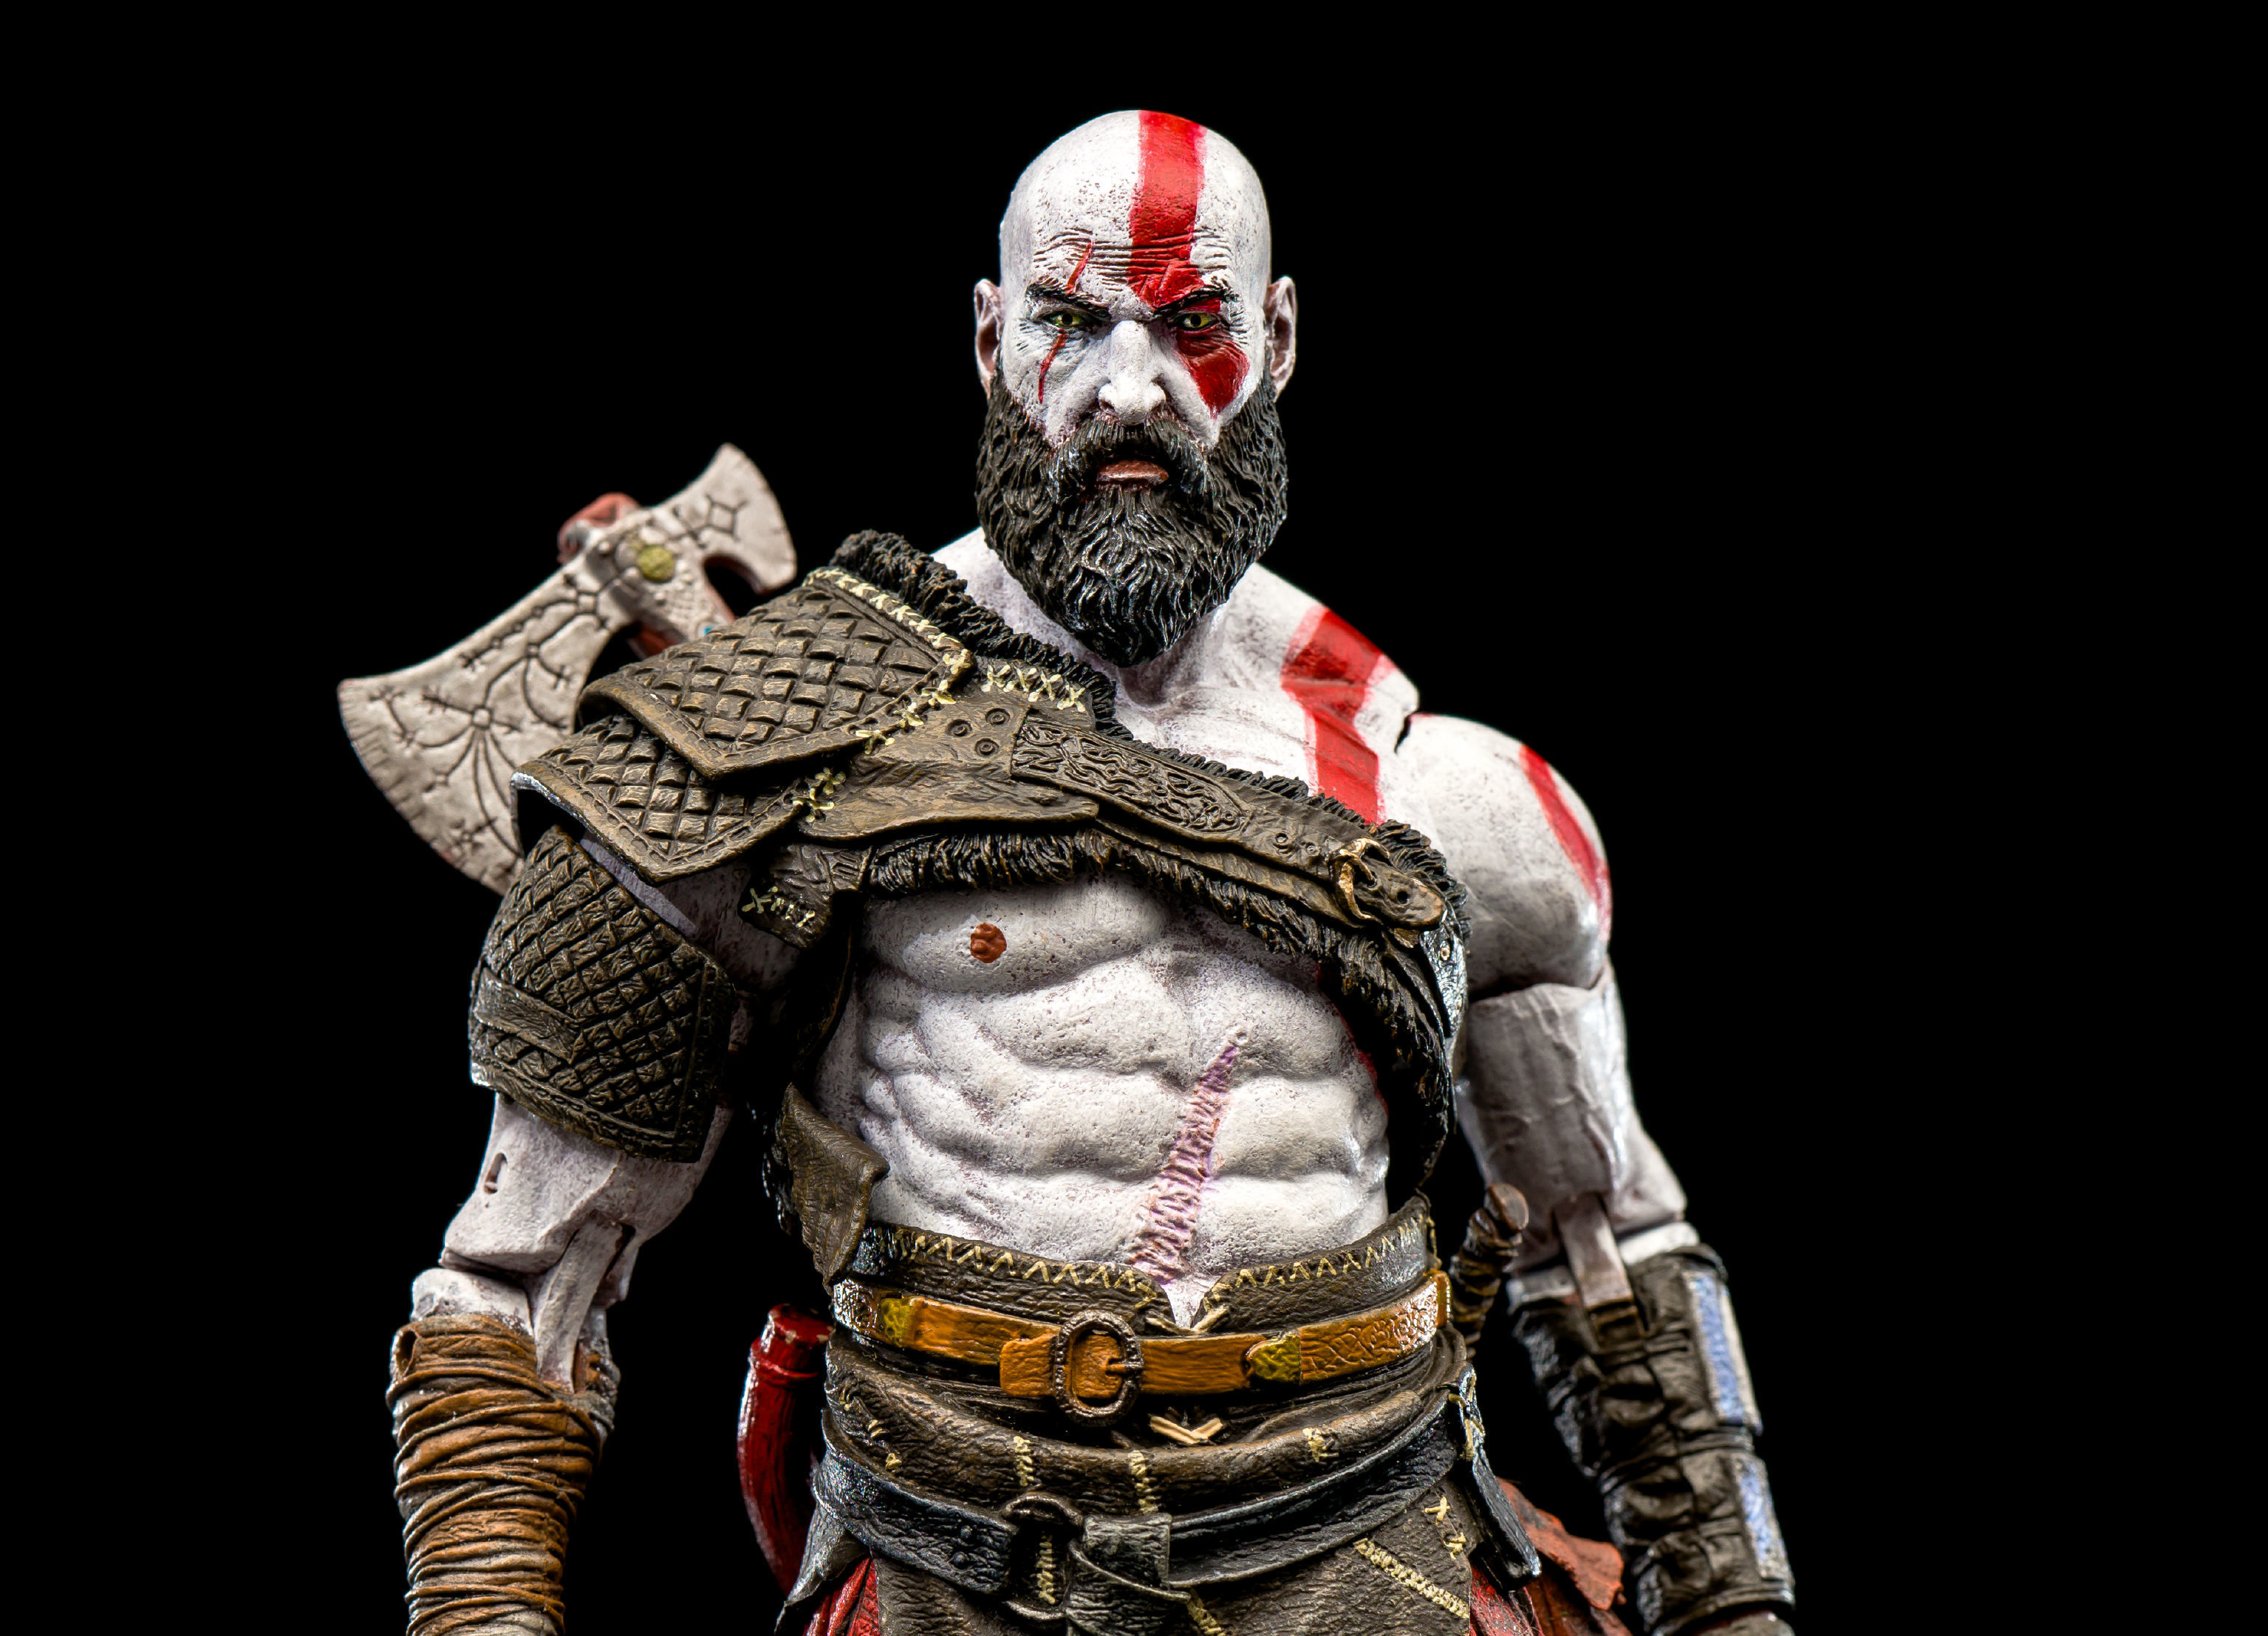 kratos god of war ascension